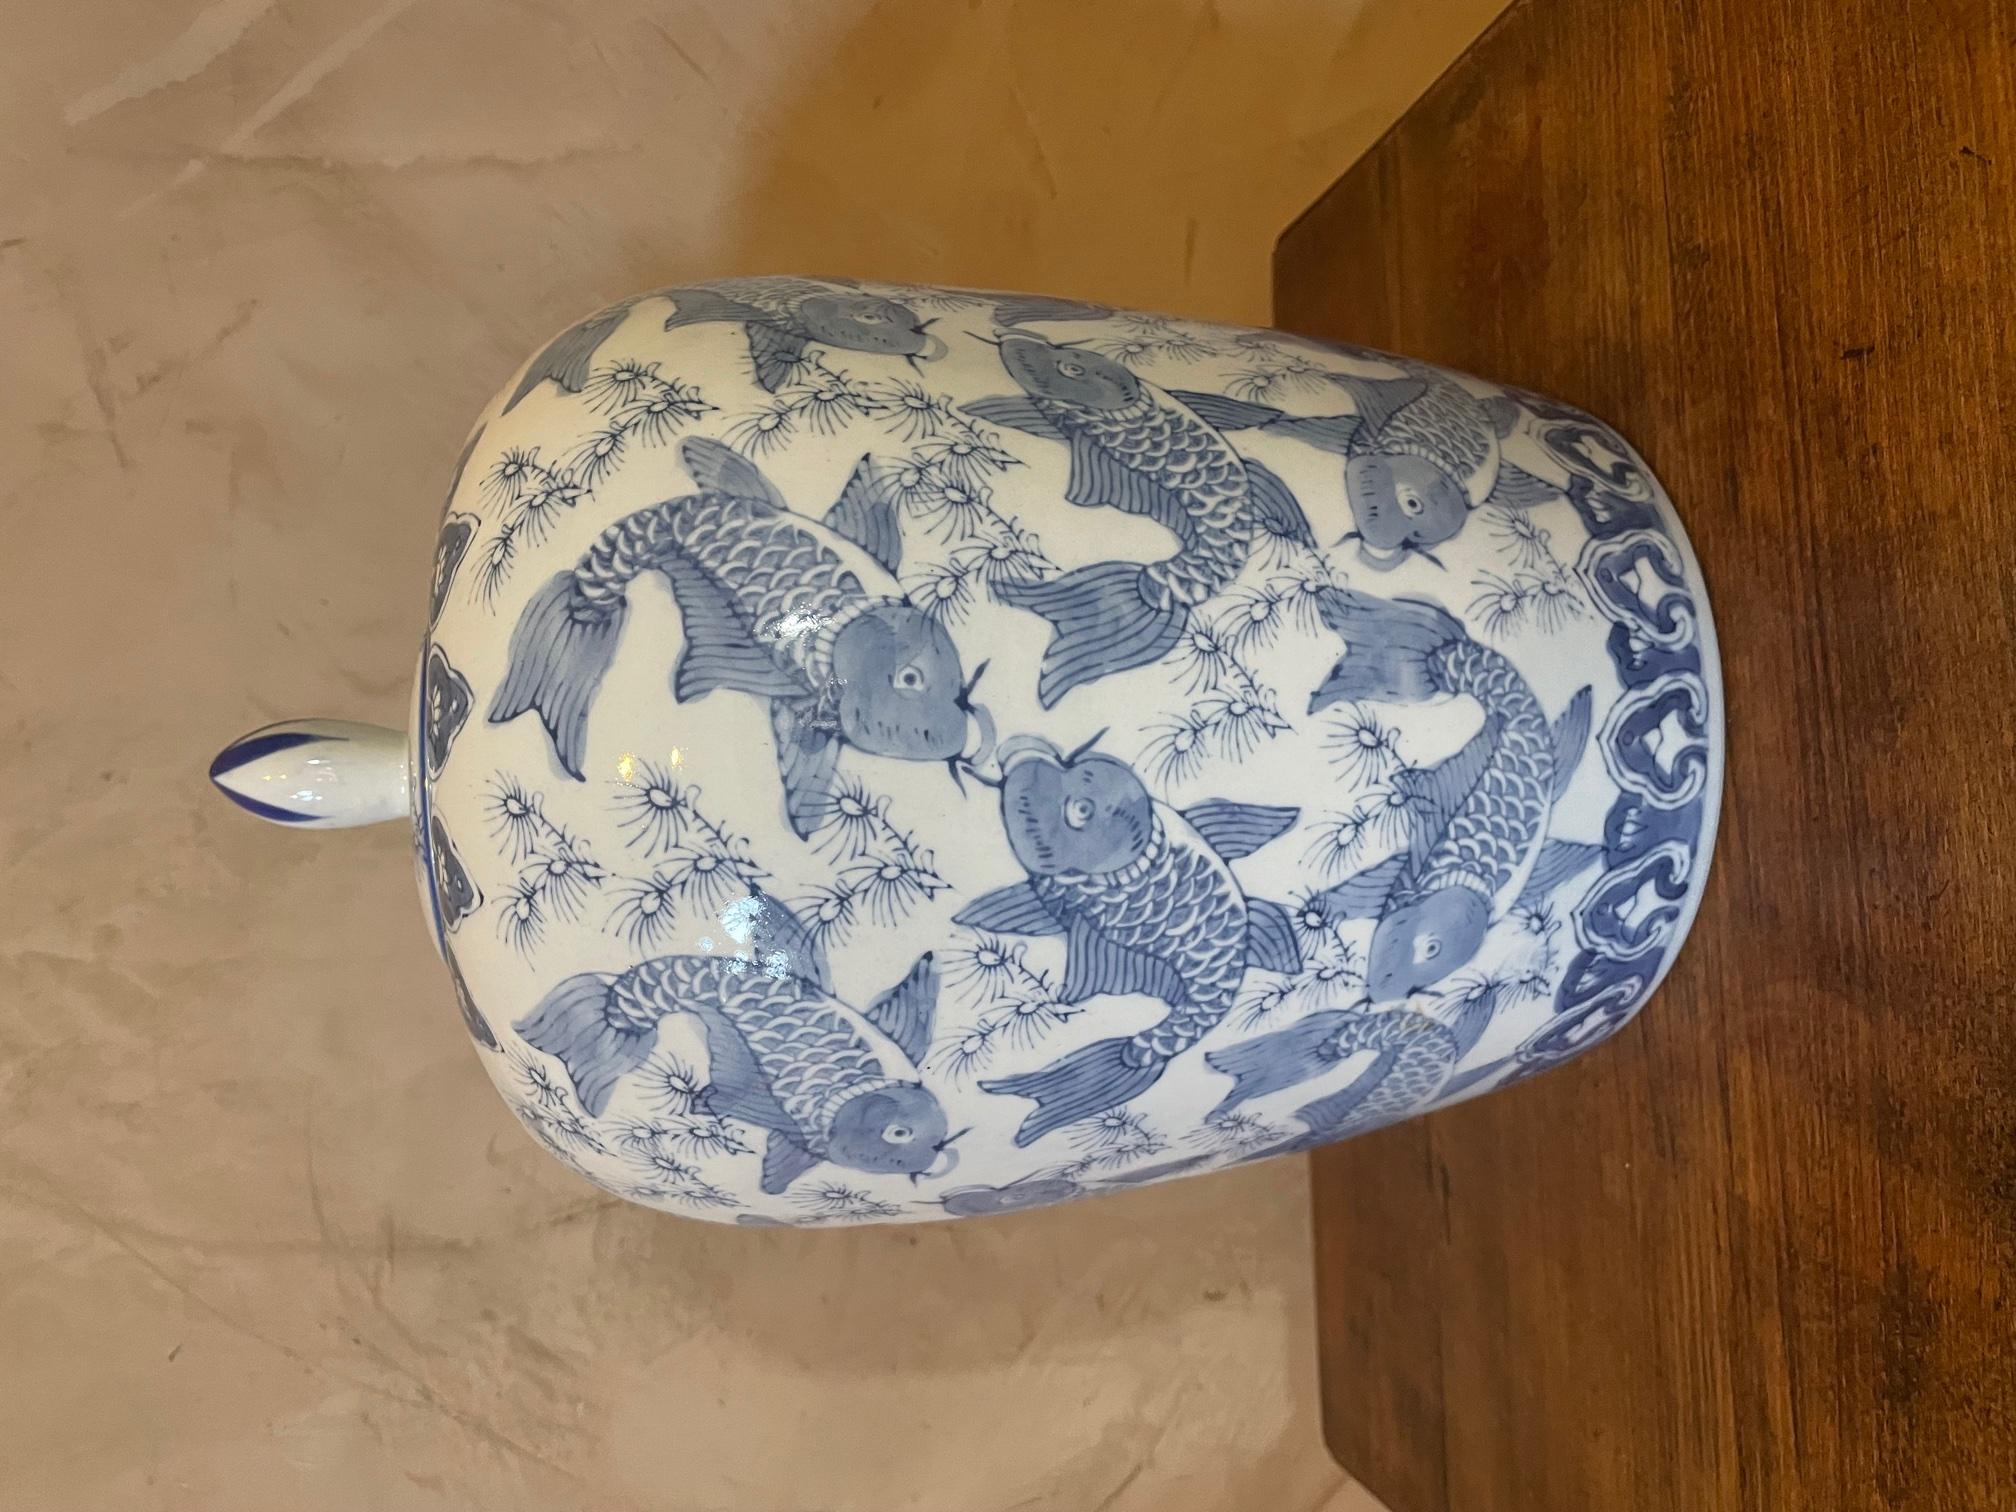 Très joli vase chinois en céramique blanche et bleue des années 1920. 
Signé 